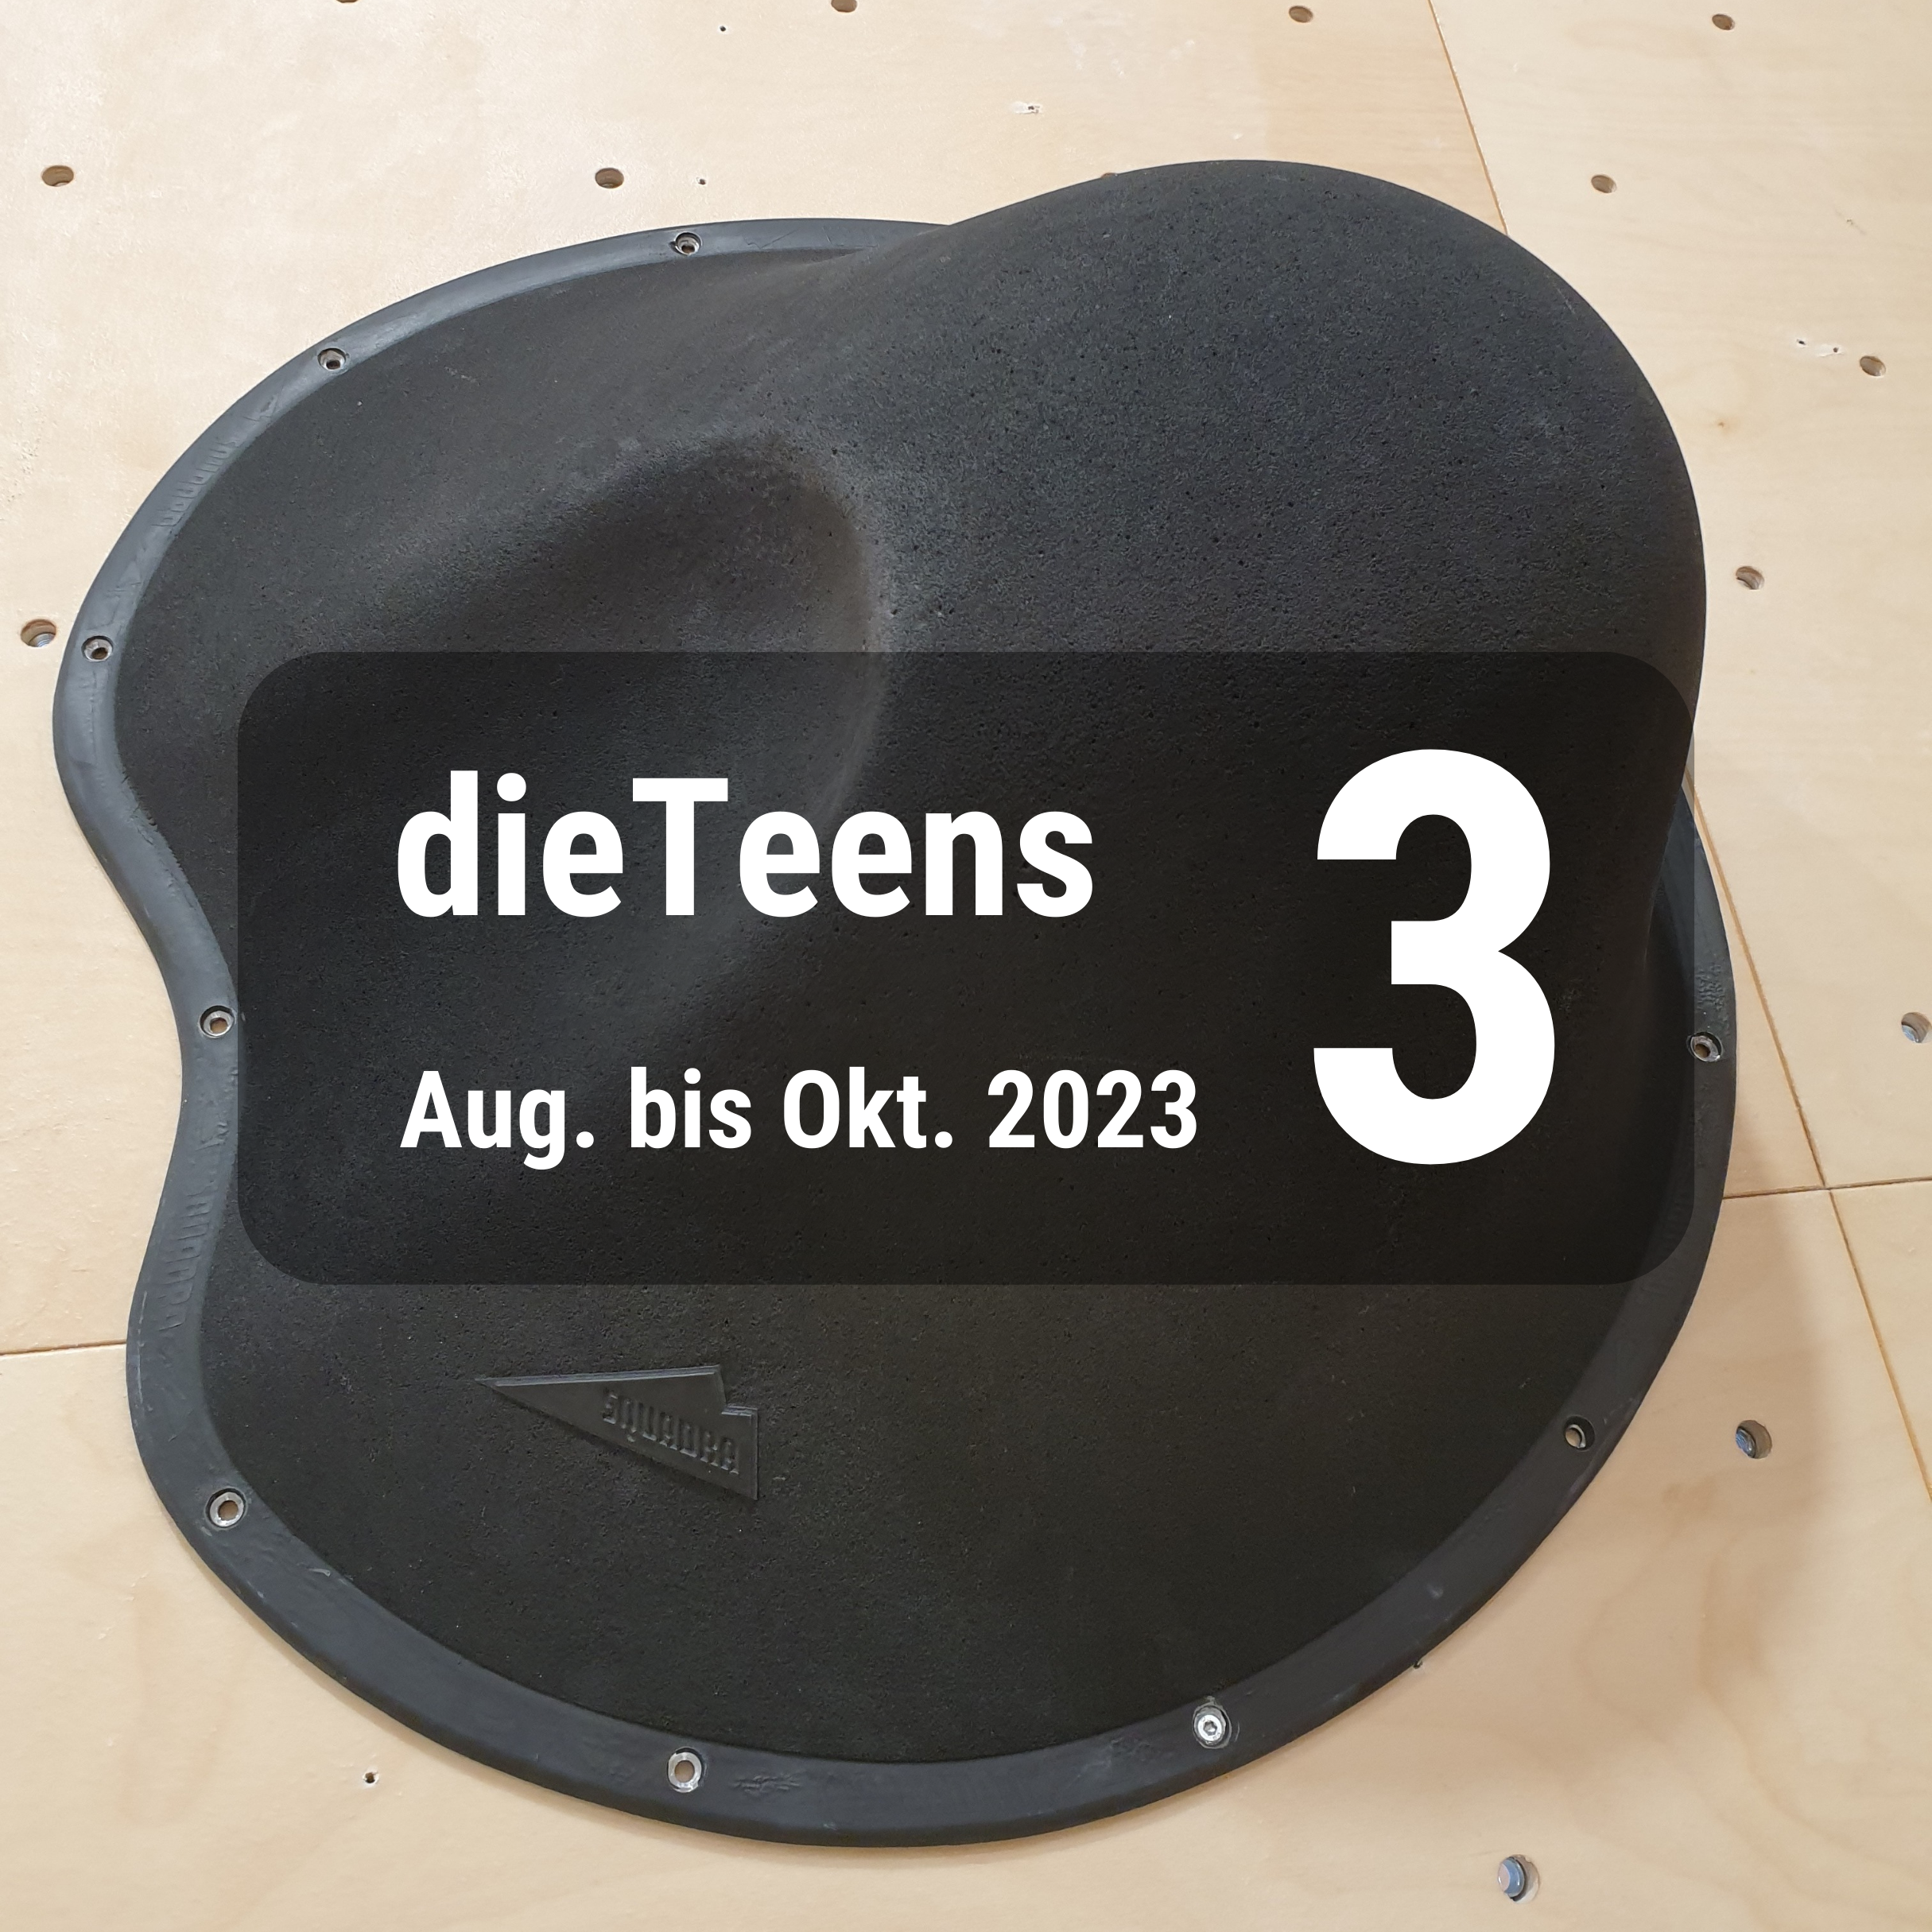 dieTeens 3 